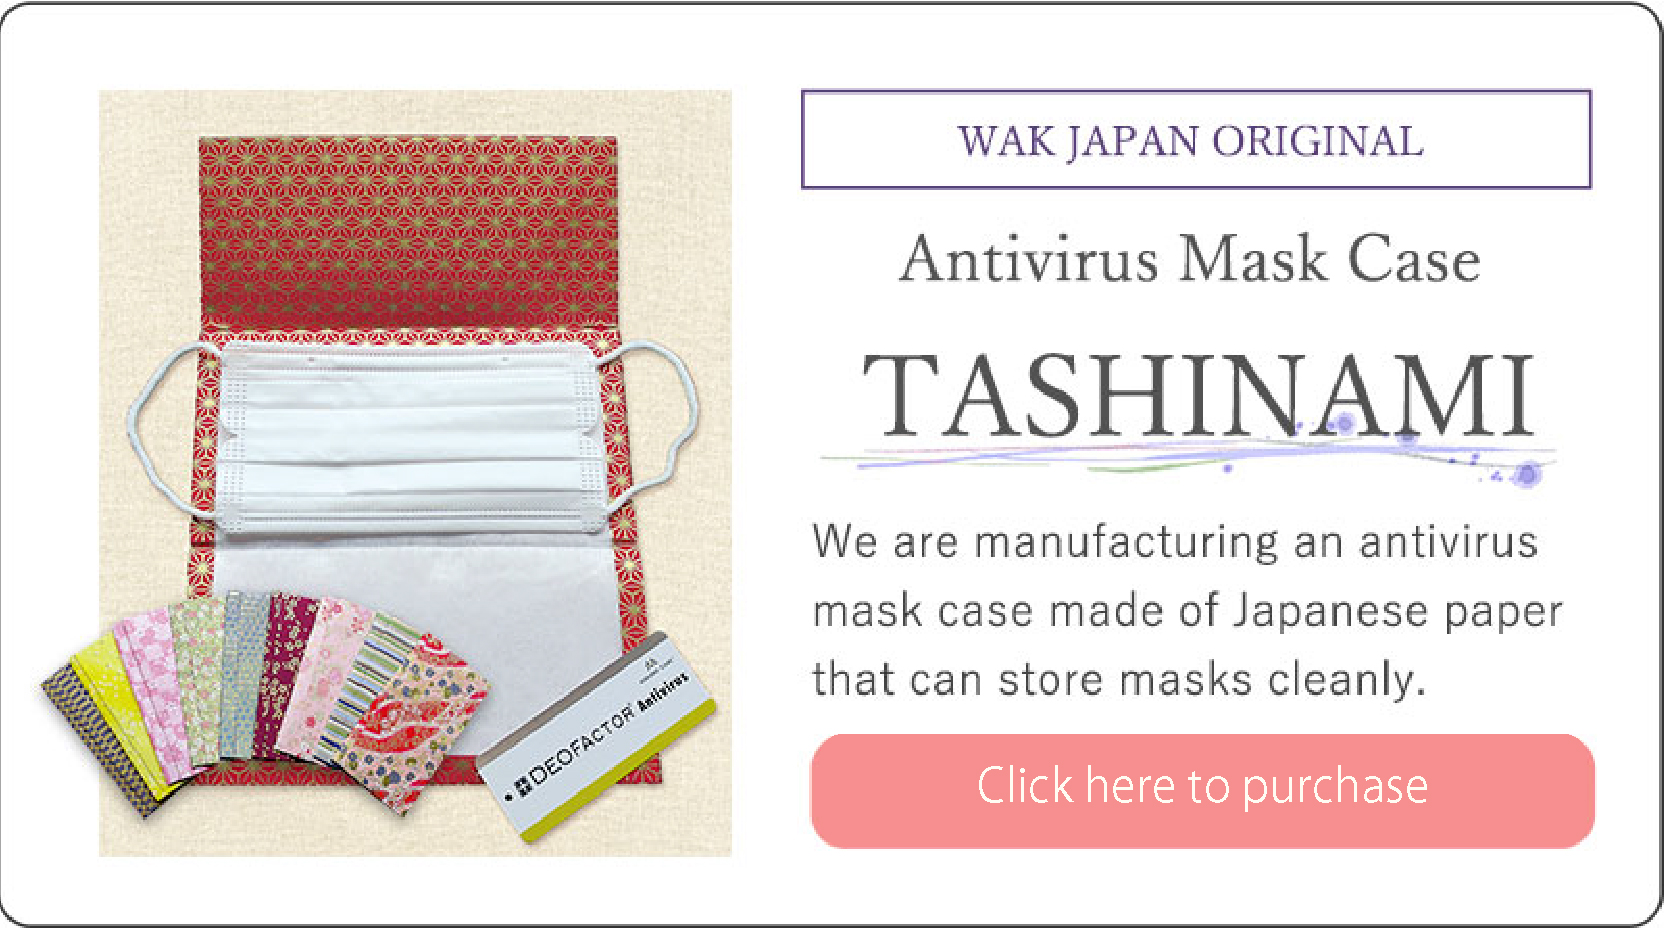 WAK JAPAN ORIGINAL Antivirus Mask Case TASHINAMI